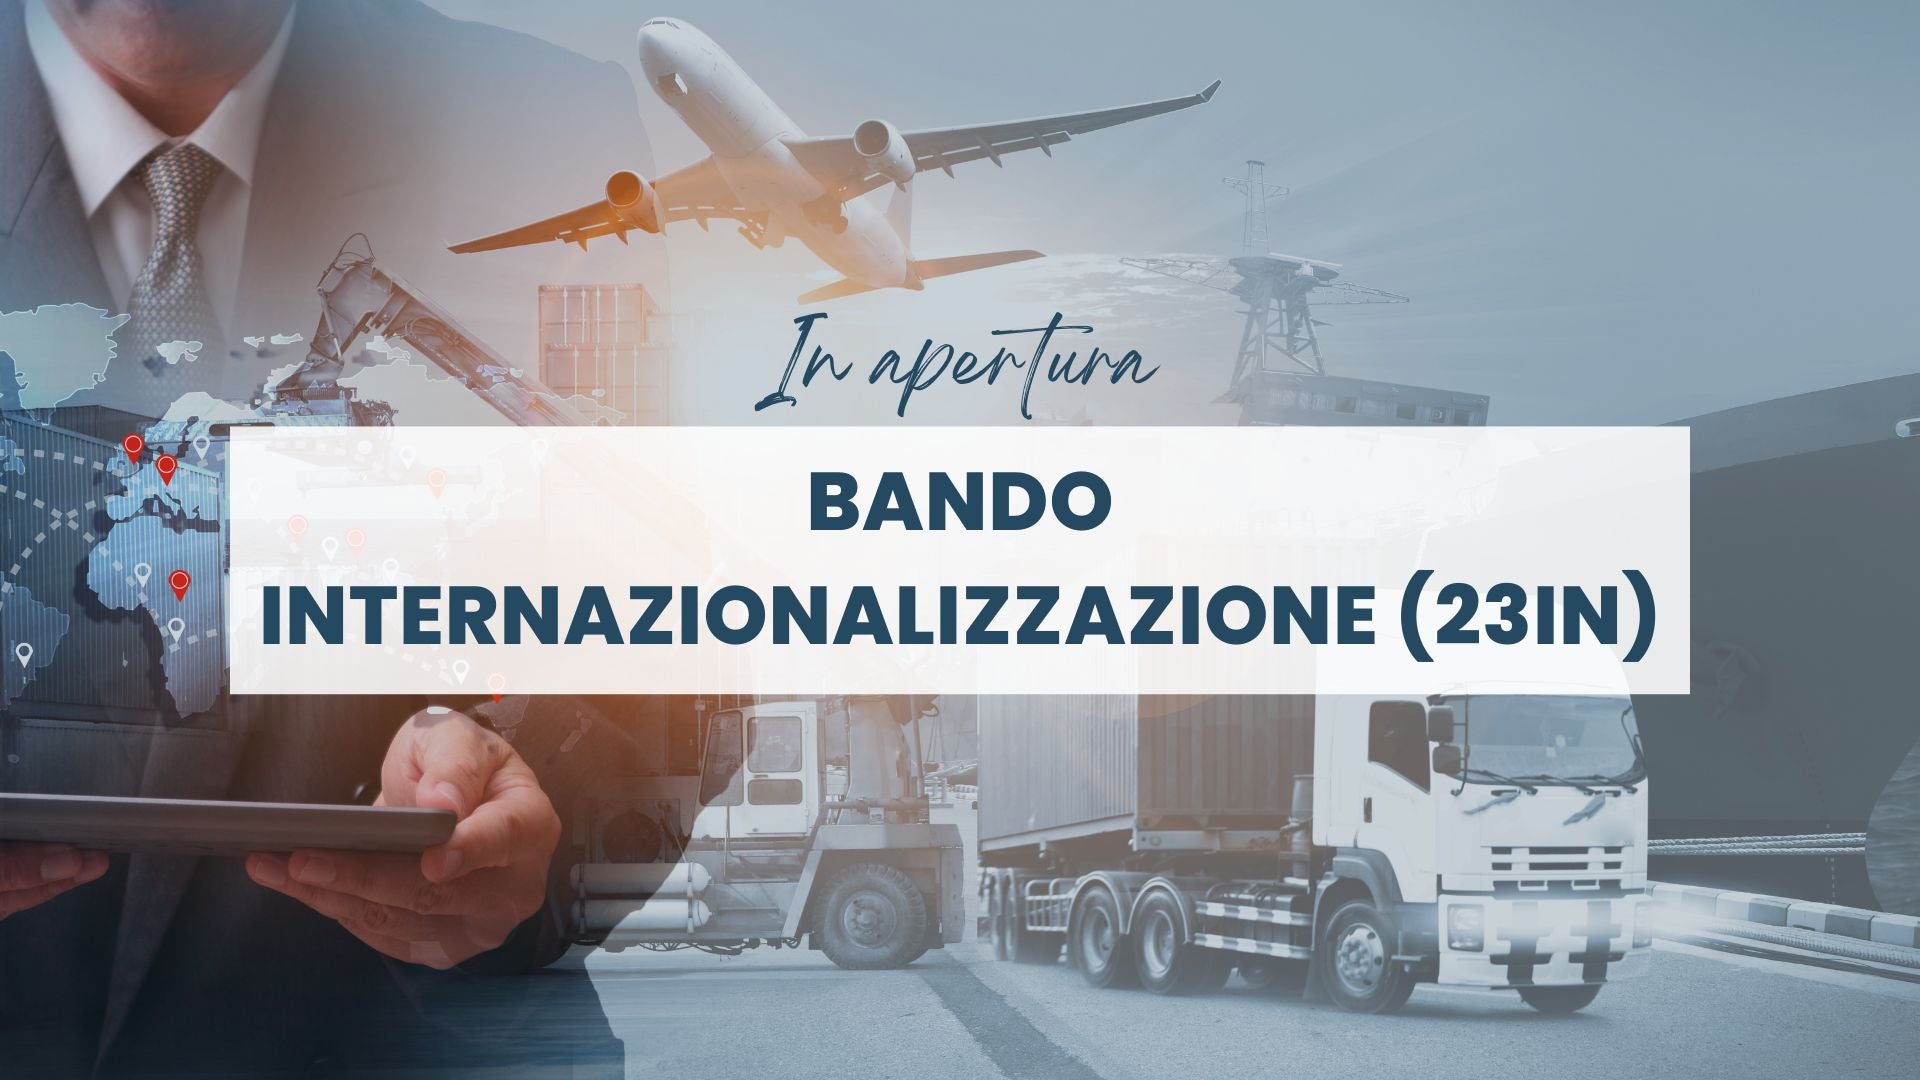 BANDO INTERNAZIONALIZZAZIONE  (23IN)